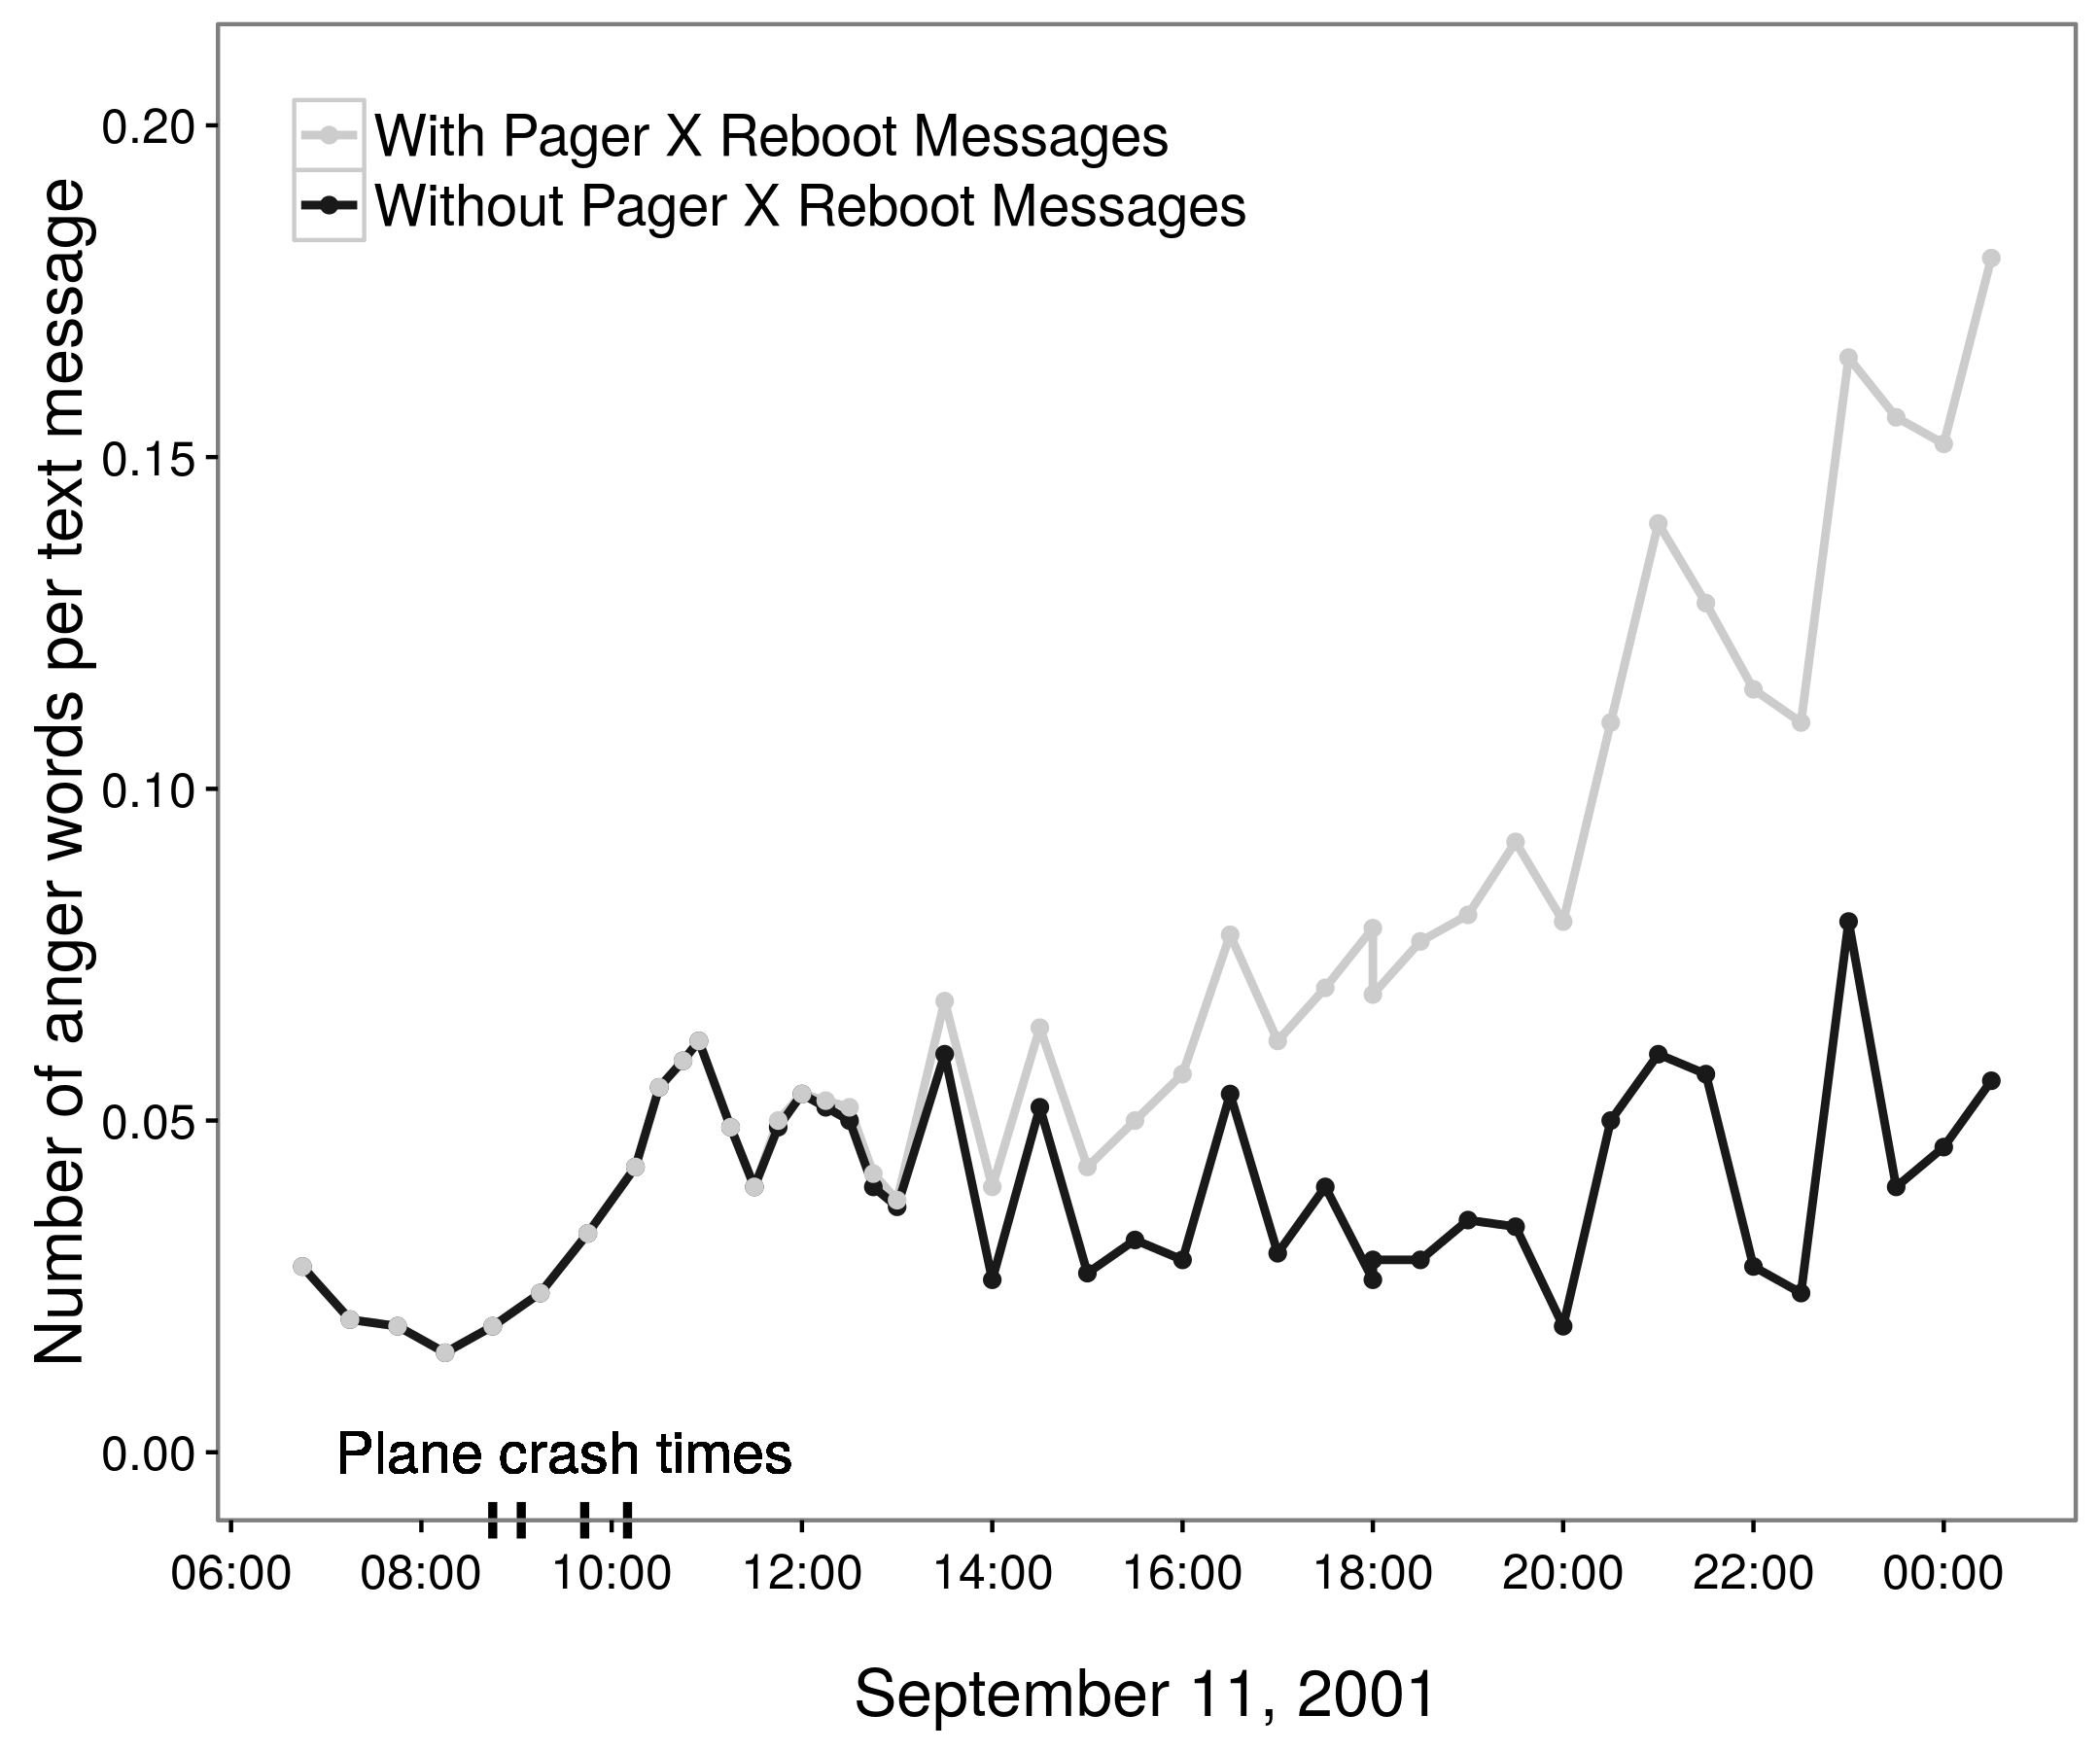 Слика 2.4: Процијењени трендови беса током 11. септембра 2001. године на основу 85.000 америчких пагера (Бацк, Куфнер и Еглофф 2010, 2011; Пури 2011). Првобитно, Бацк, Куфнер и Еглофф (2010) су извештавали о моделу повећања беса током дана. Међутим, већину ових очигледно бесних порука генерисало је један пејџер који је више пута послао следећу поруку: Ребоот НТ мацхине [наме] у кабинету [име] на [локацији]: КРИТИЧКИ: [датум и време]. Са уклоњеном поруком, очигледно повећање беса нестаје (Пури 2011; Бацк, Куфнер, и Еглофф 2011). Прилагођено од Пури (2011), слика 1б.